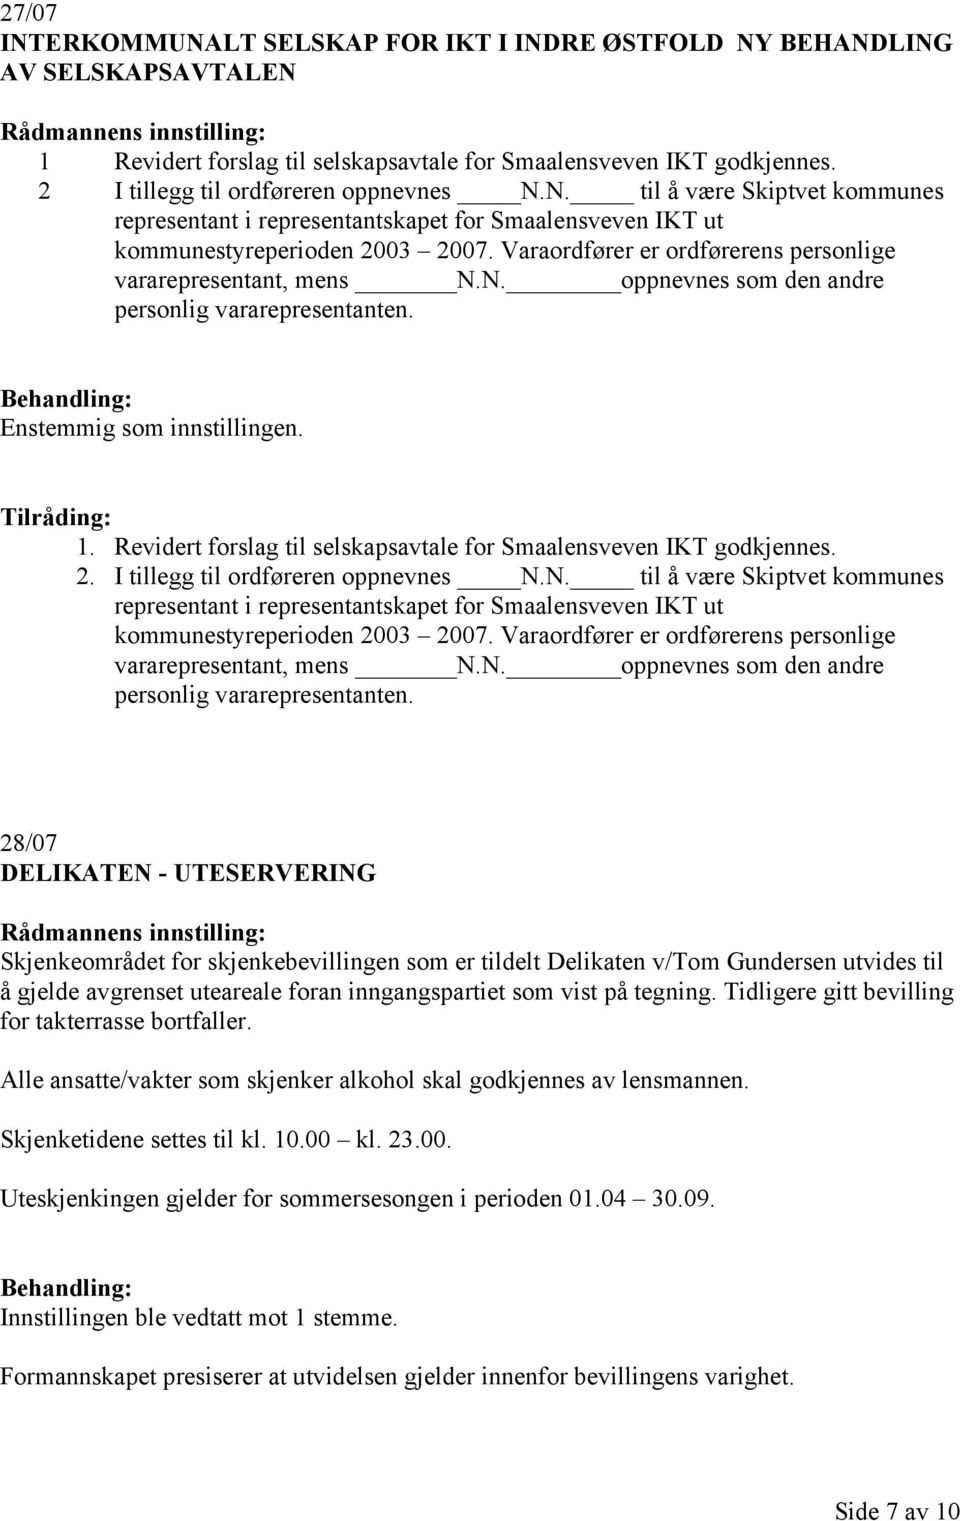 Revidert forslag til selskapsavtale for Smaalensveven IKT godkjennes. 2. I tillegg til ordføreren oppnevnes N.